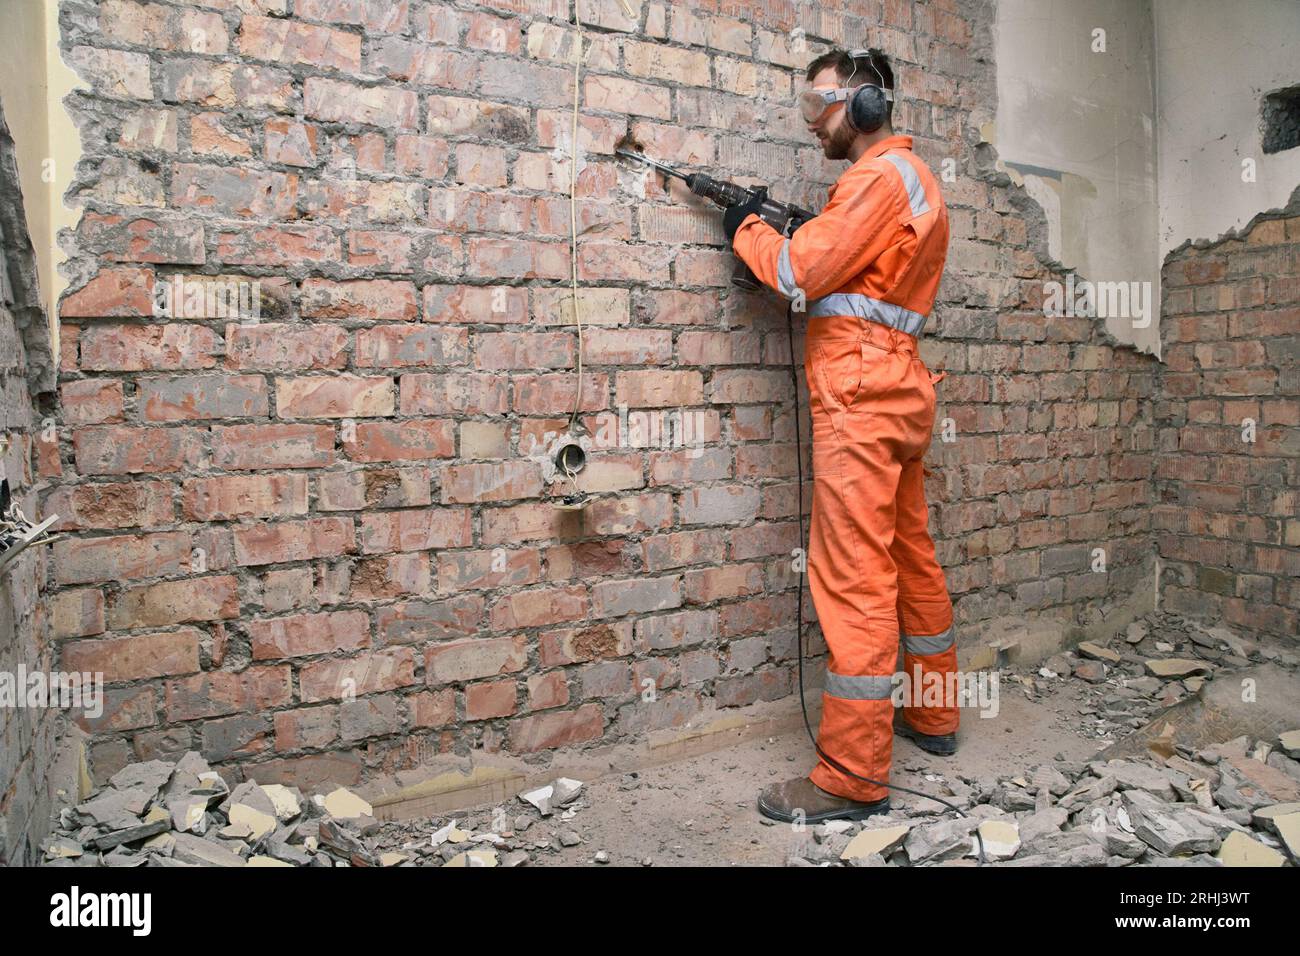 Travailleur debout enlevant le vieux plâtre du mur de briques rouges à l'aide d'une perceuse à percussion, portant des gants, des bottes, un masque, un casque antibruit et une combinaison orange. Banque D'Images